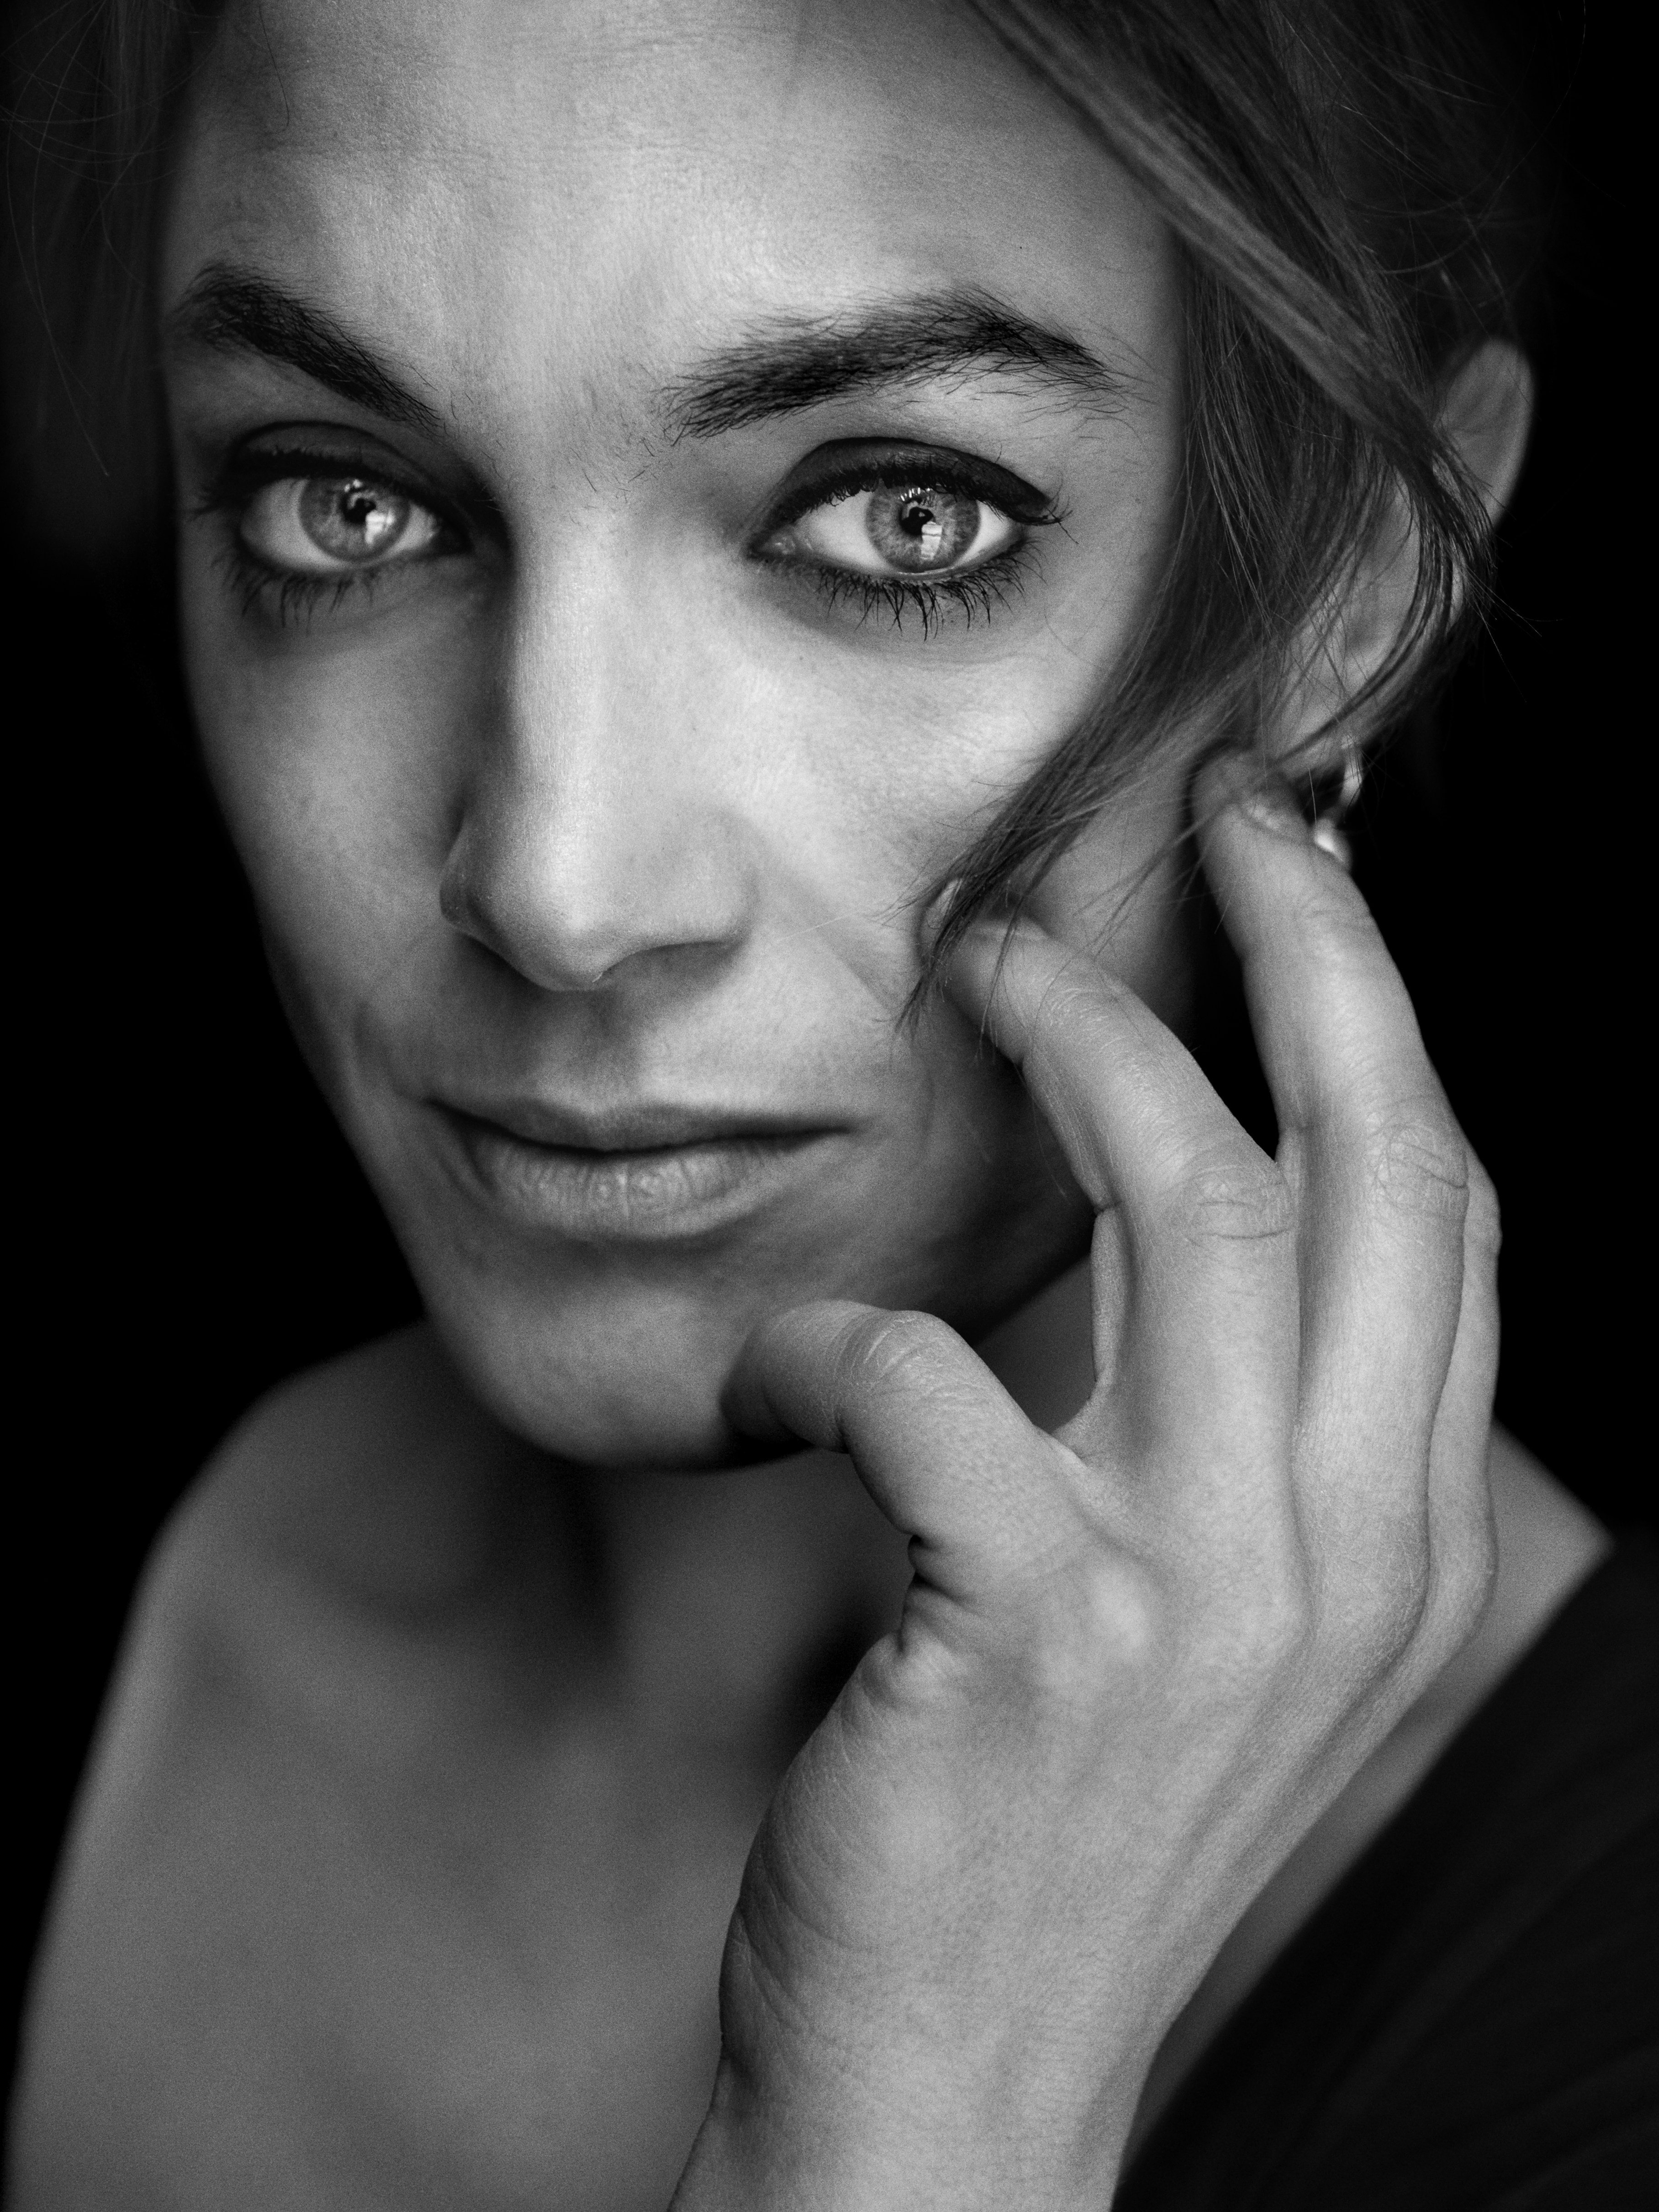 Porträttfoto i svartvitt av kvinna som ser med intensiv blick in i kameran.